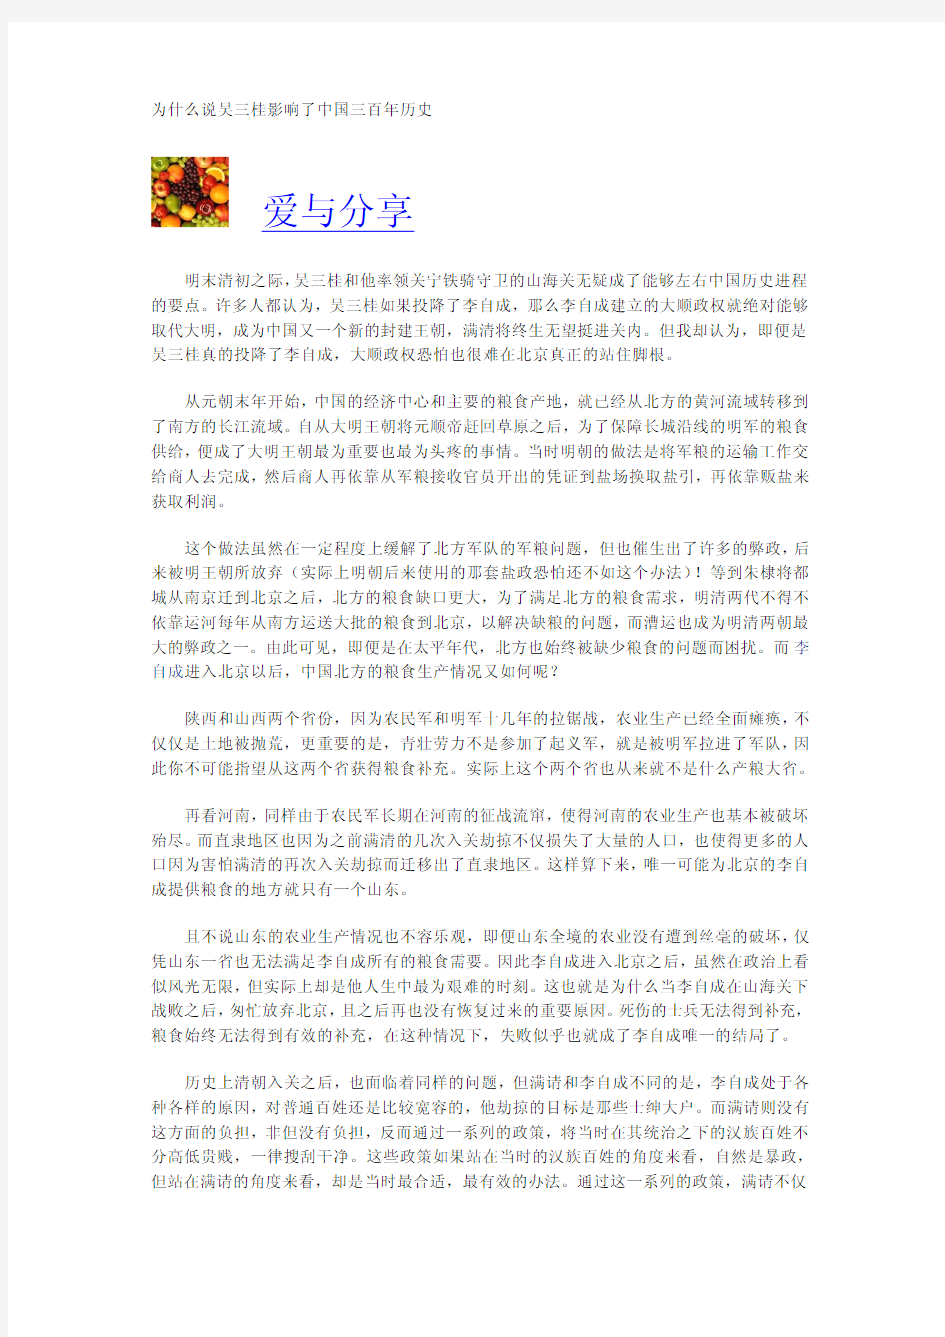 为什么说吴三桂影响了中国三百年历史